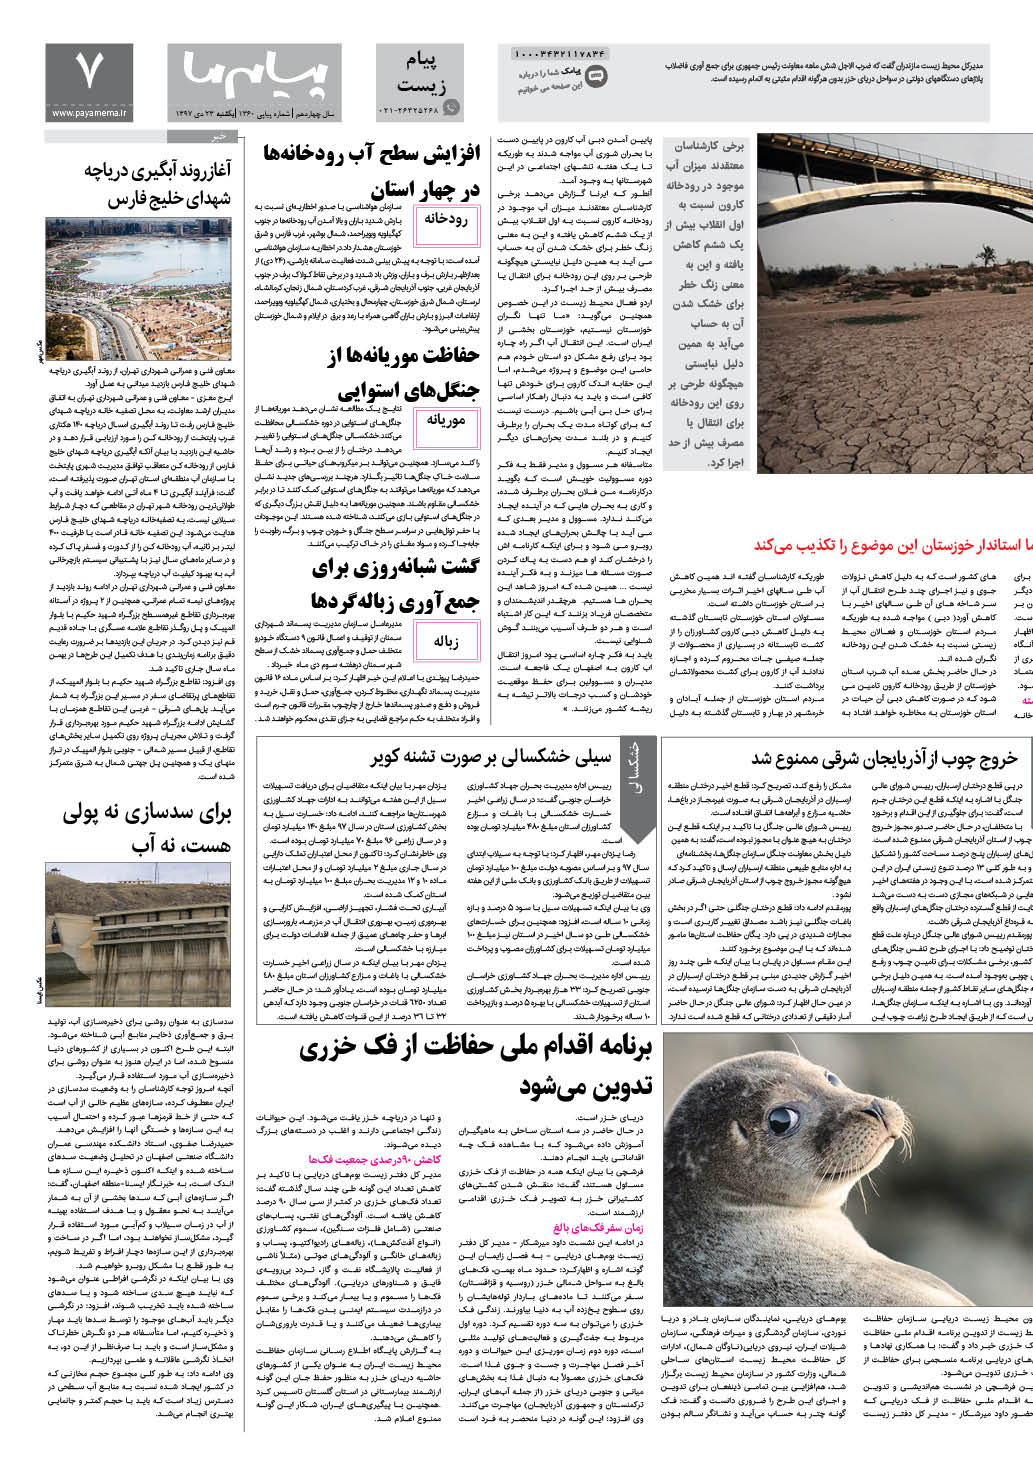 صفحه پیام زیست شماره 1360 روزنامه پیام ما